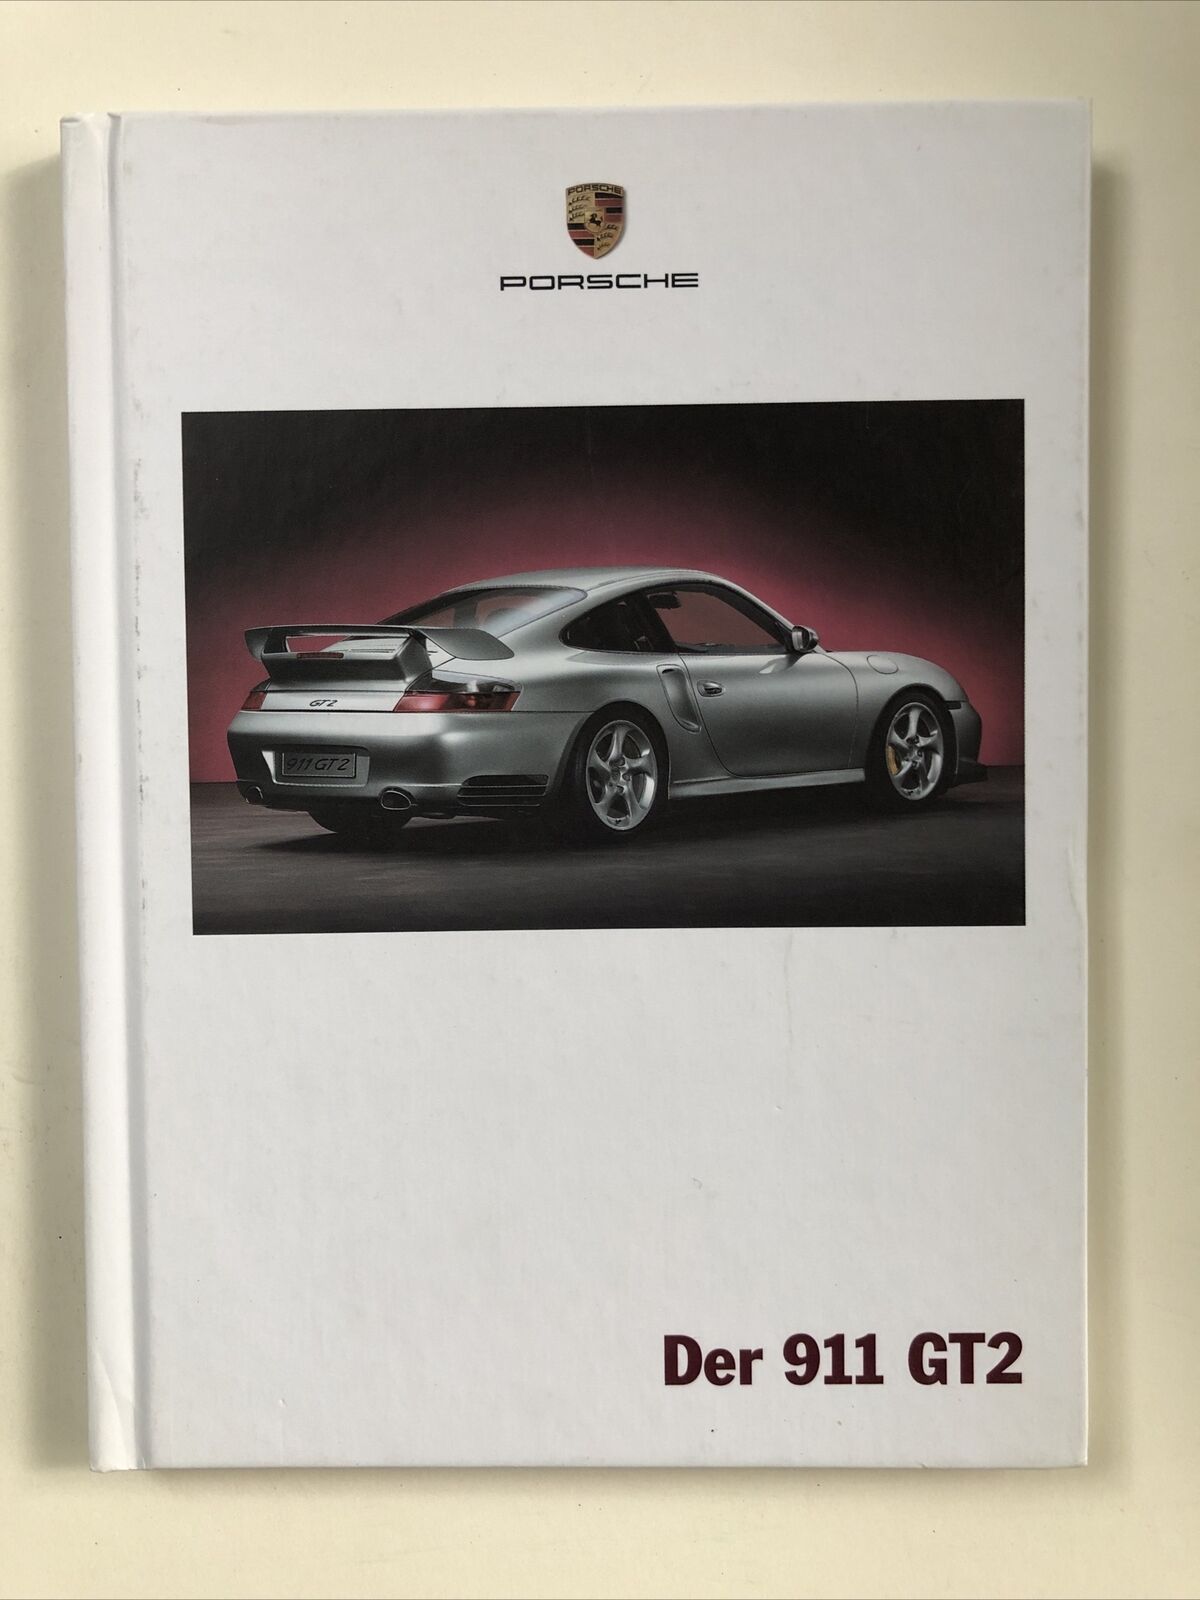 2002 Der 911 GT2 show room book in German